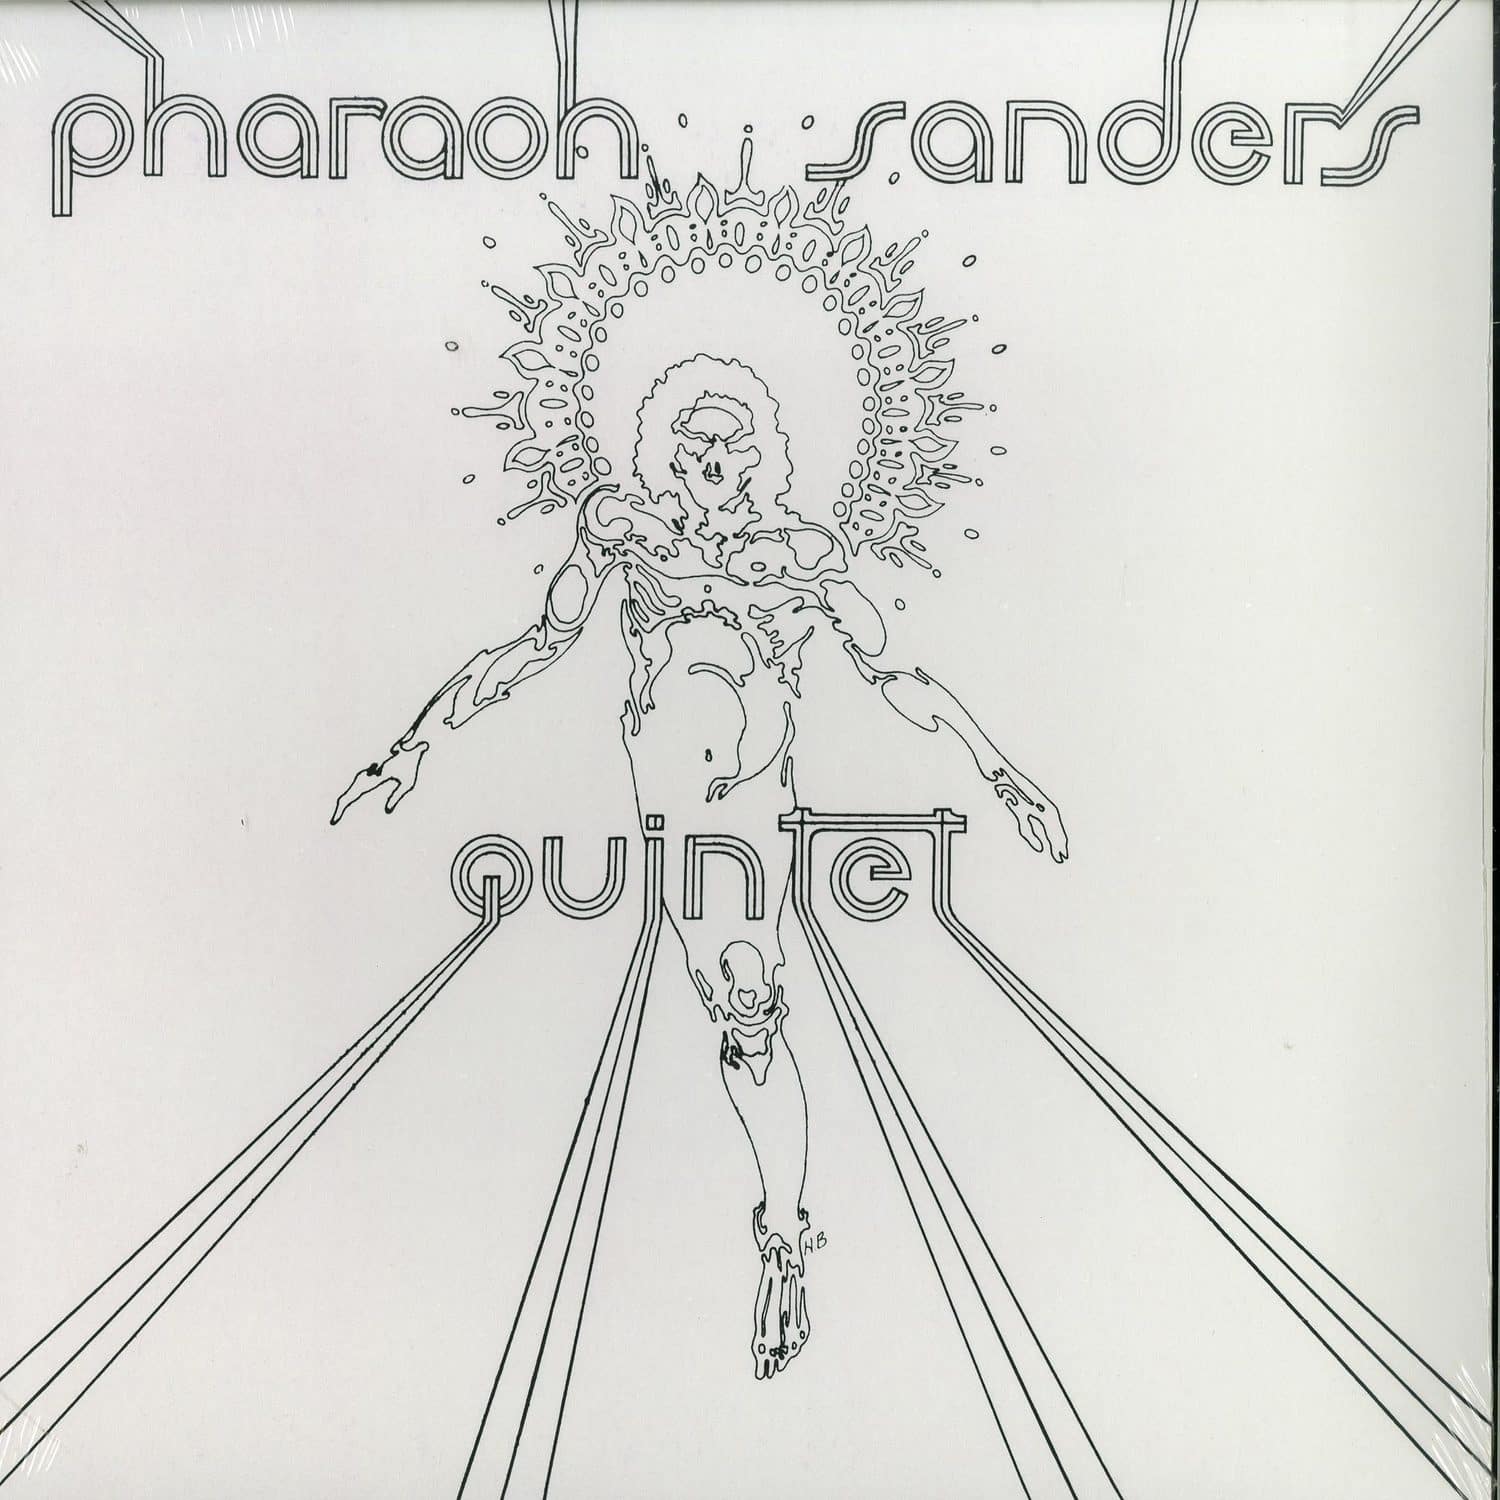 Pharoah Sanders Quintet - PHAROAH SANDERS QUINTET 